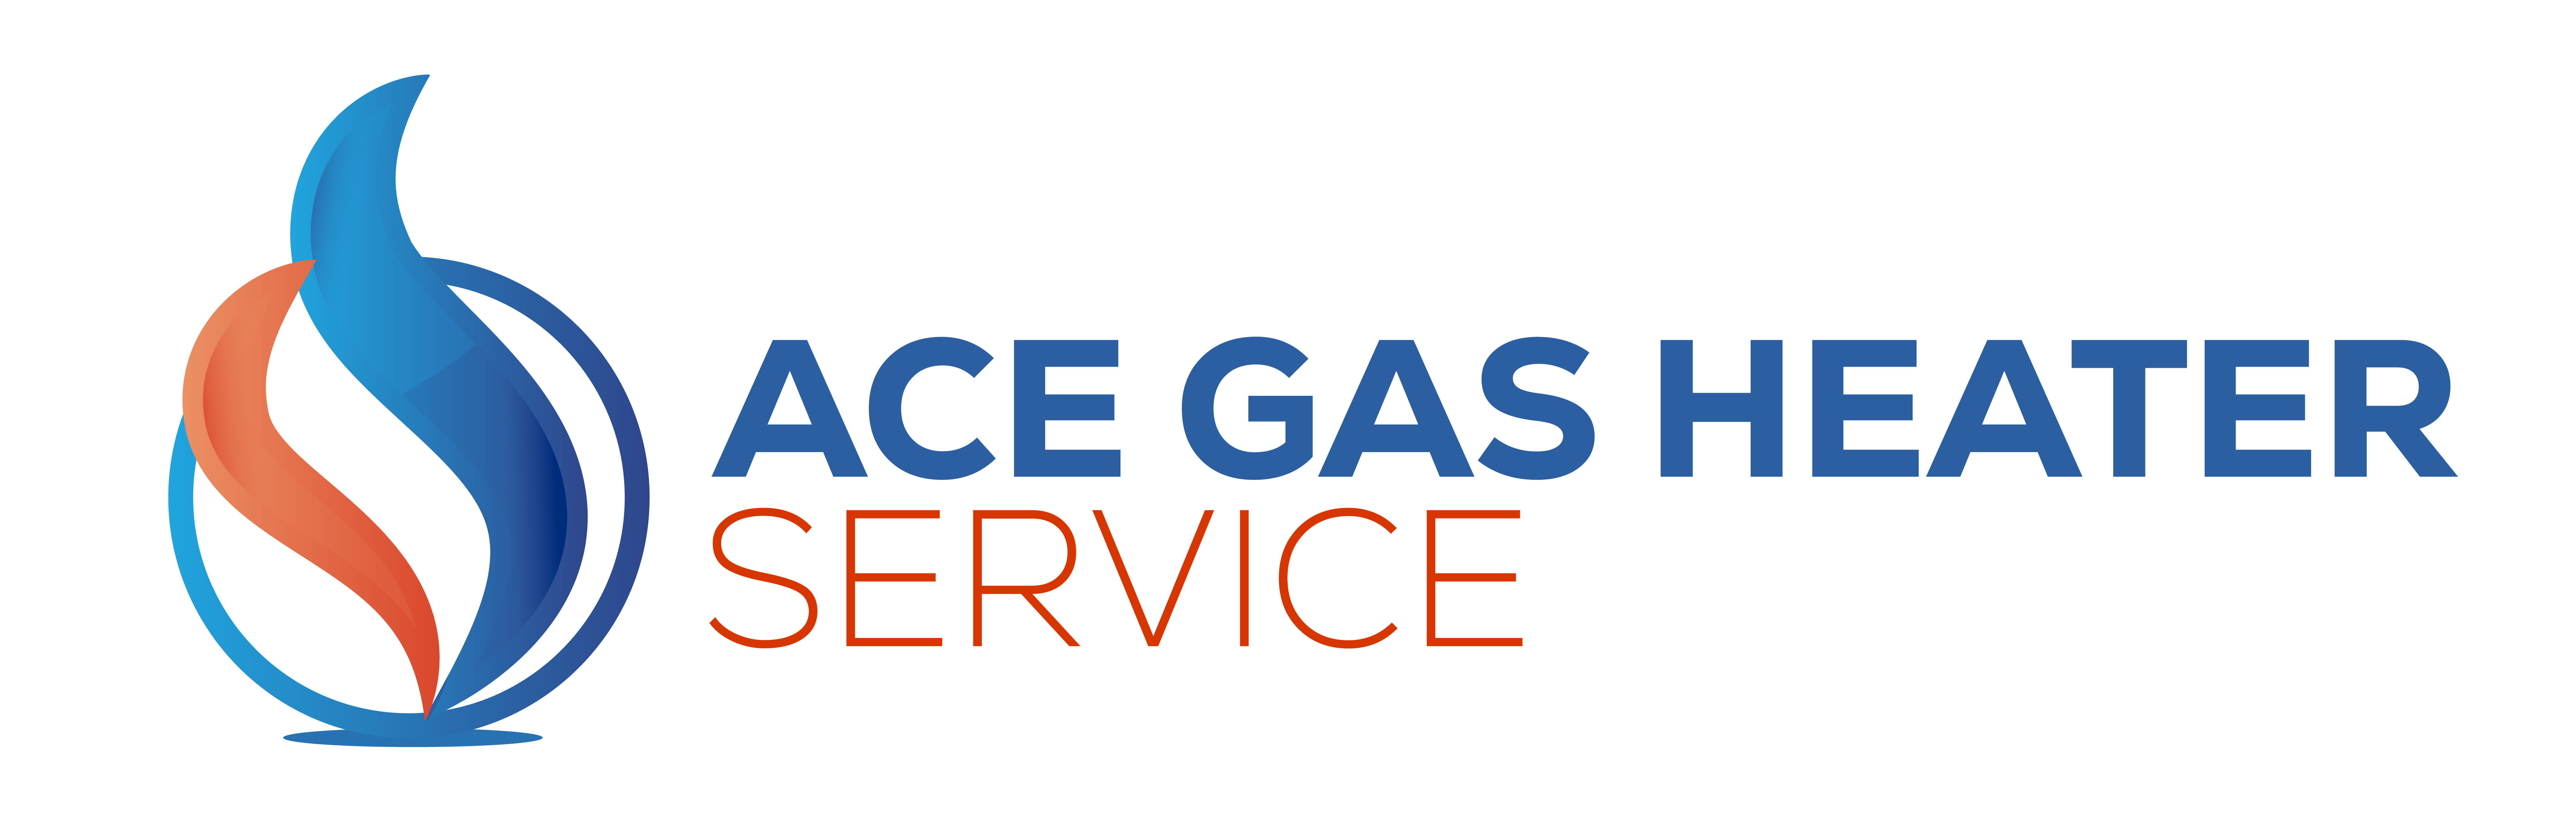 Ace Gas Heater Service